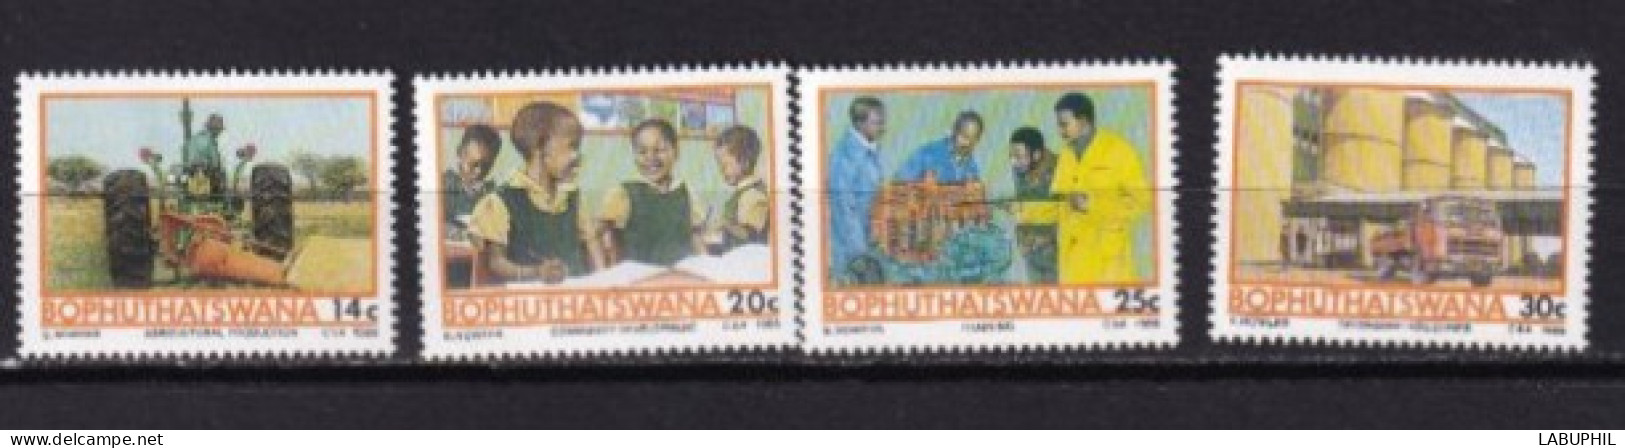 BOPHUTHATSWANA MNH ** 1986 - Bophuthatswana